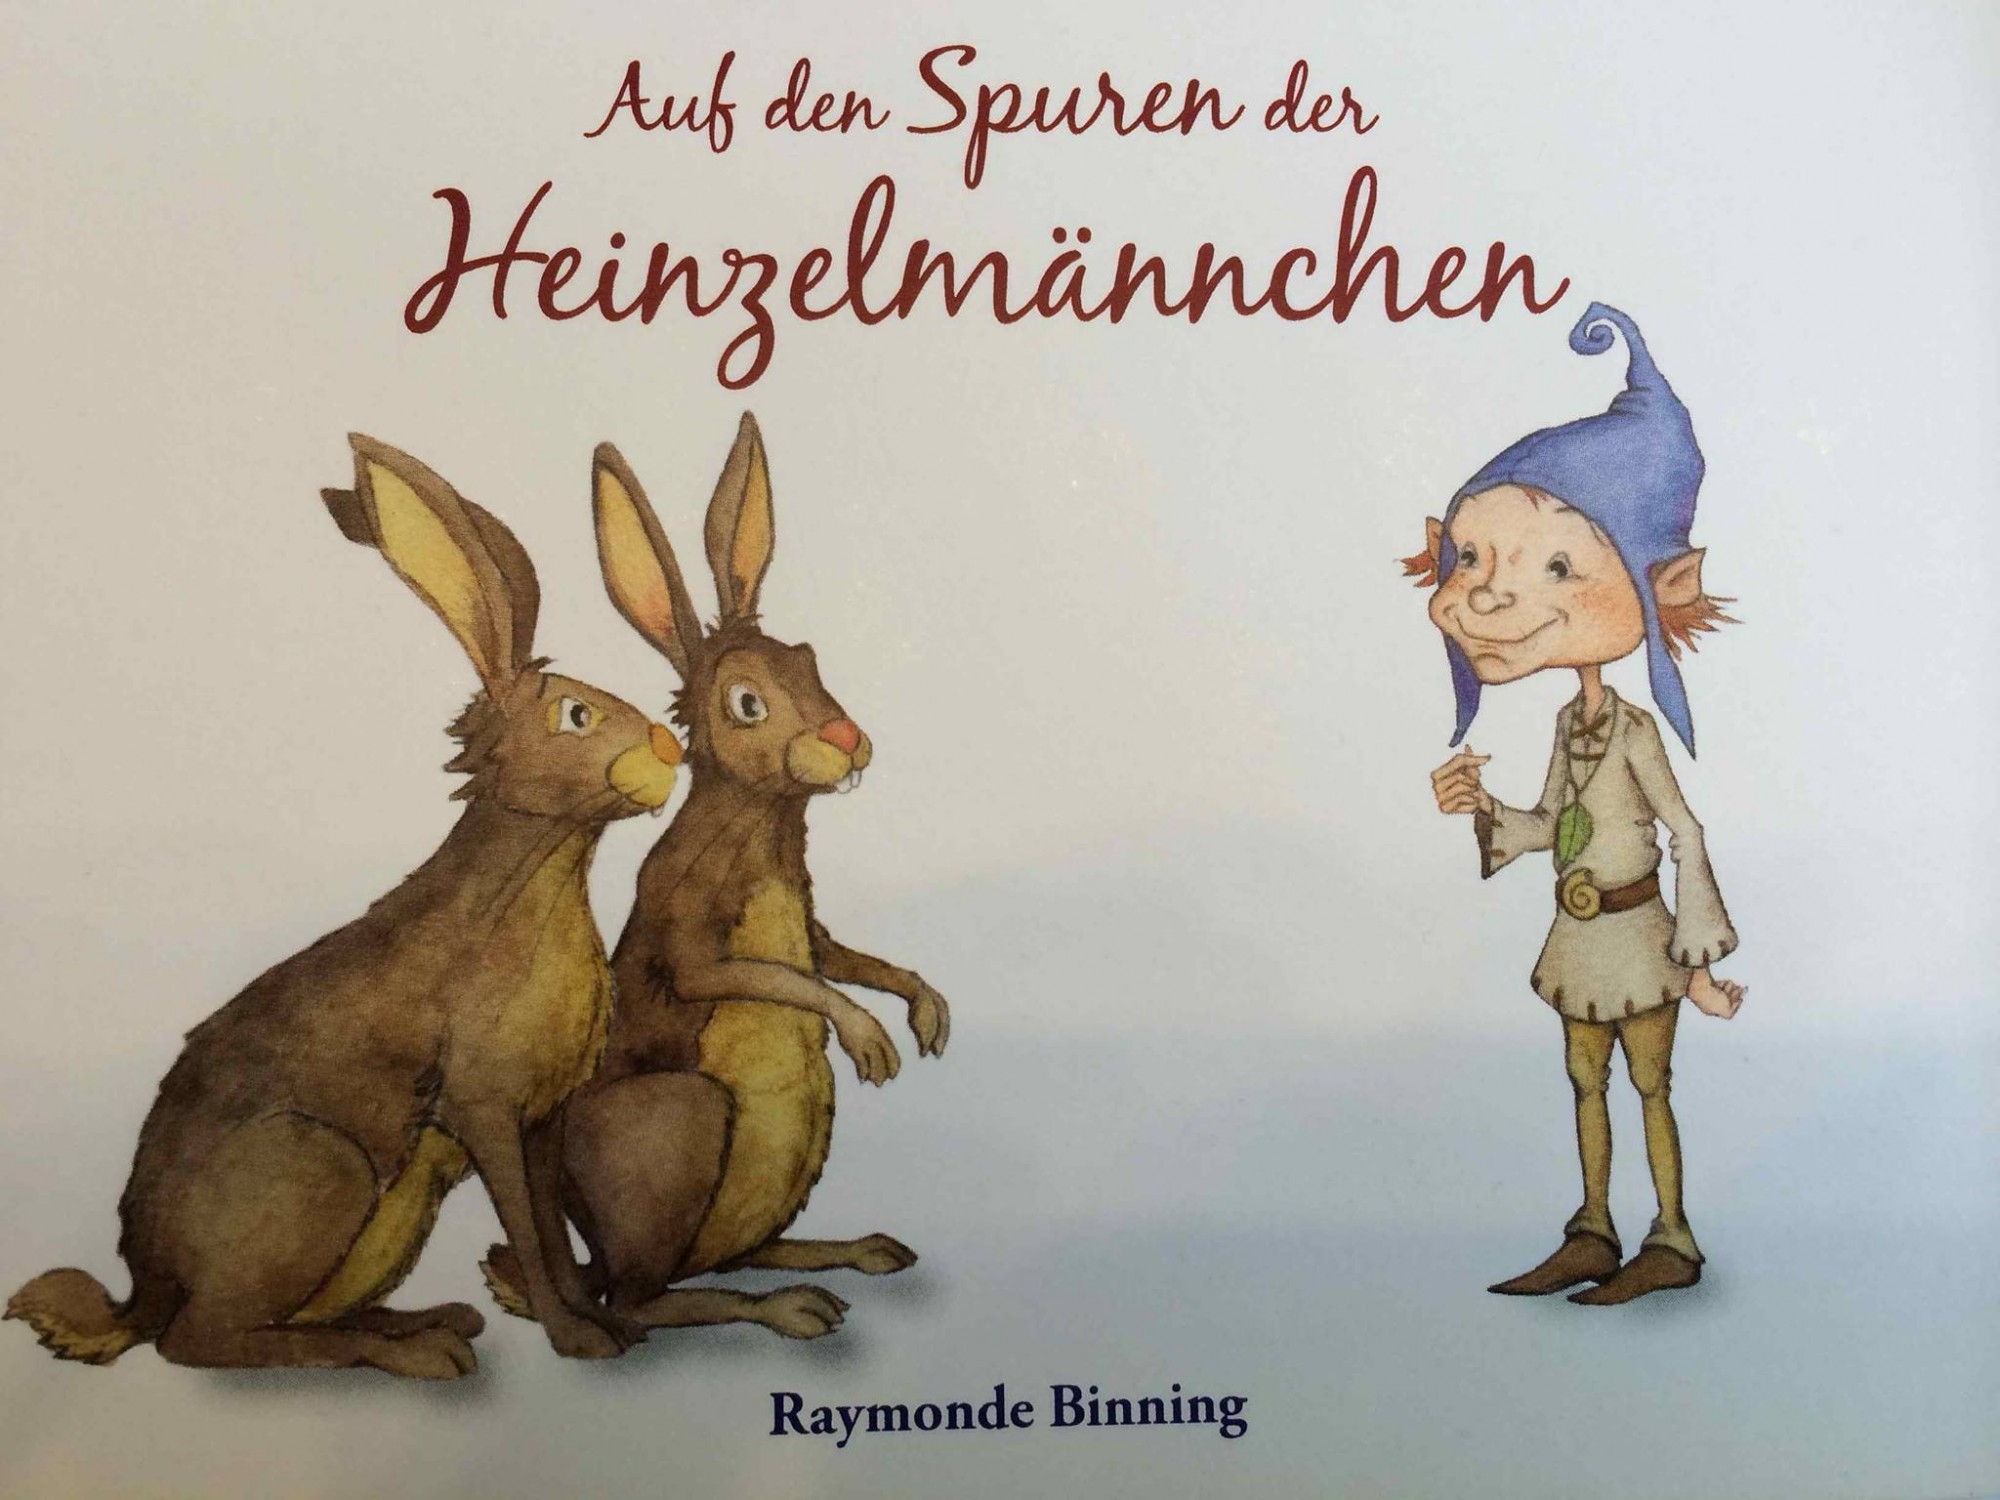 Es wird gelesen aus dem Buch der Dresdner Autorin Raymonde Binning.